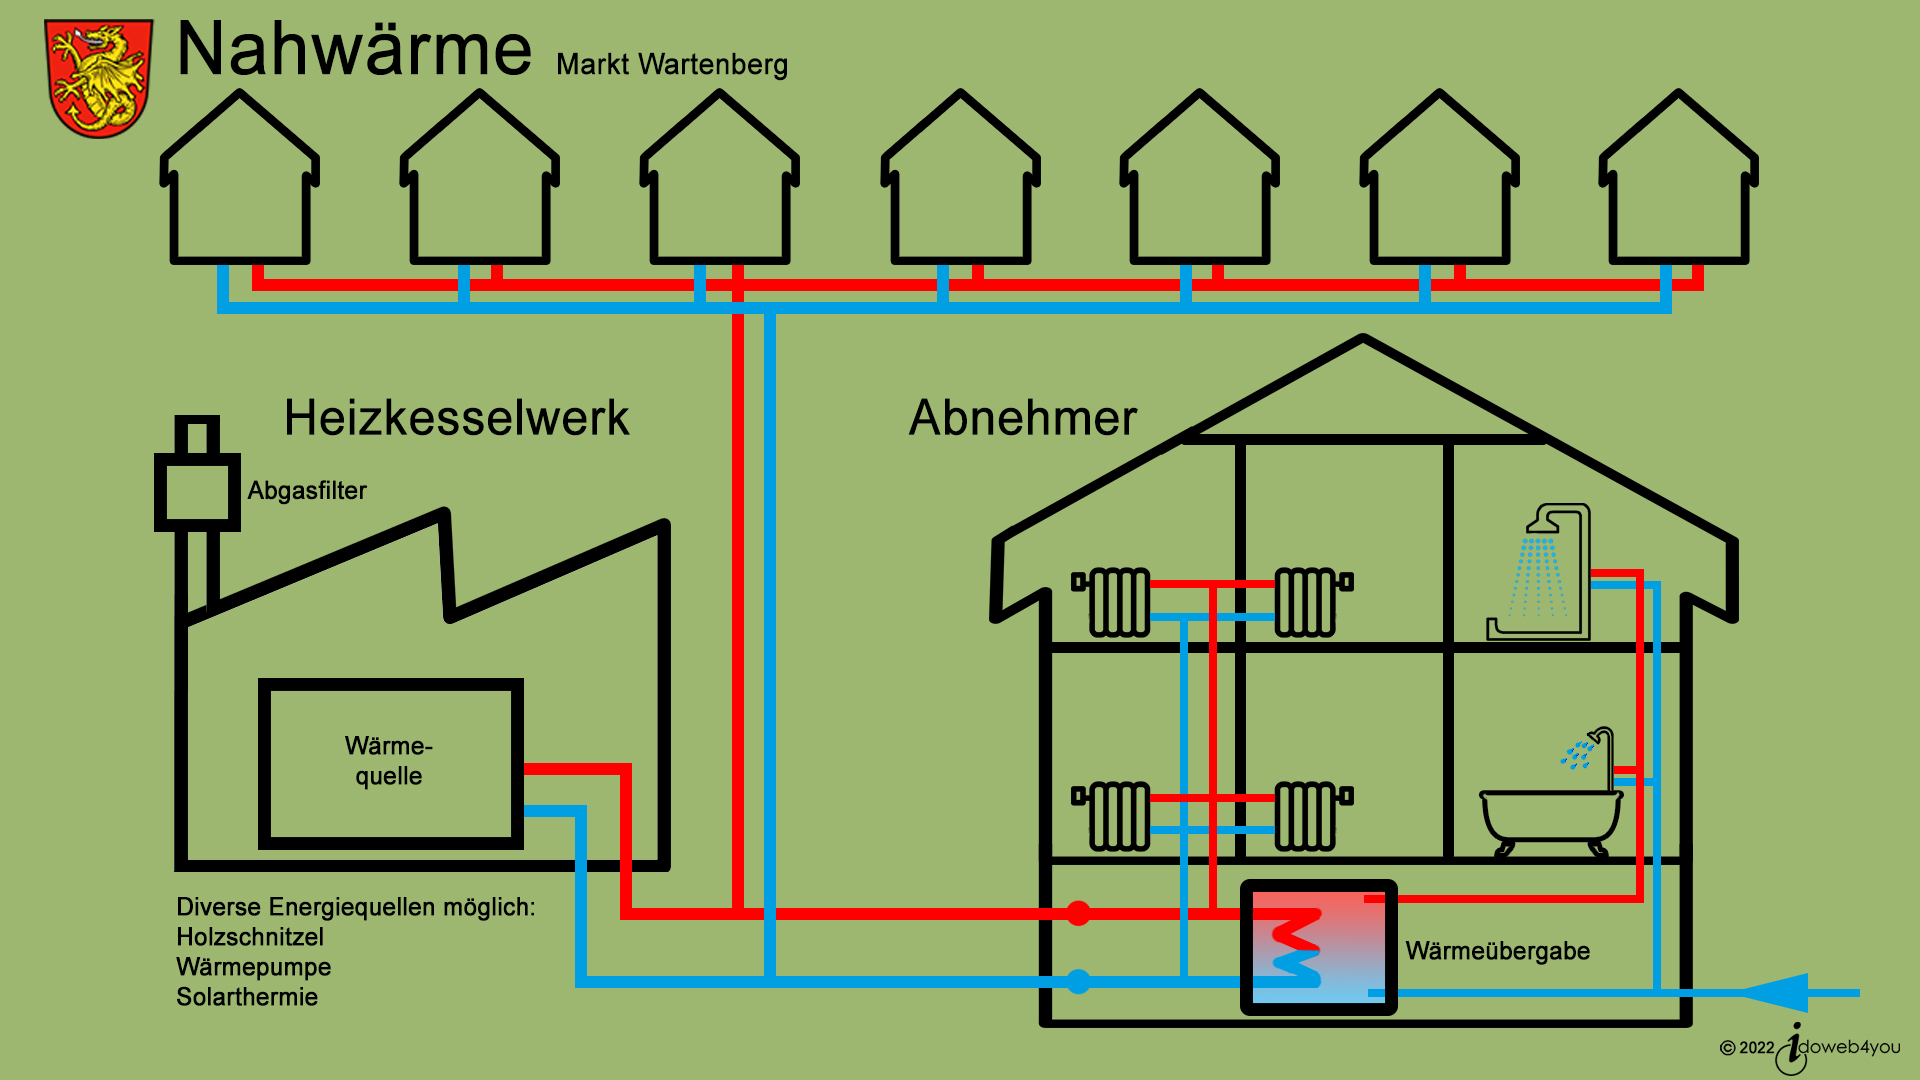 Nahwärme Wartenberg, Bild zeigt Skizze als Schema zur Erläuterung der Funktionsweise eines Nahwärme-Rohrsystems mit Wärmetauscher in Hausanlage